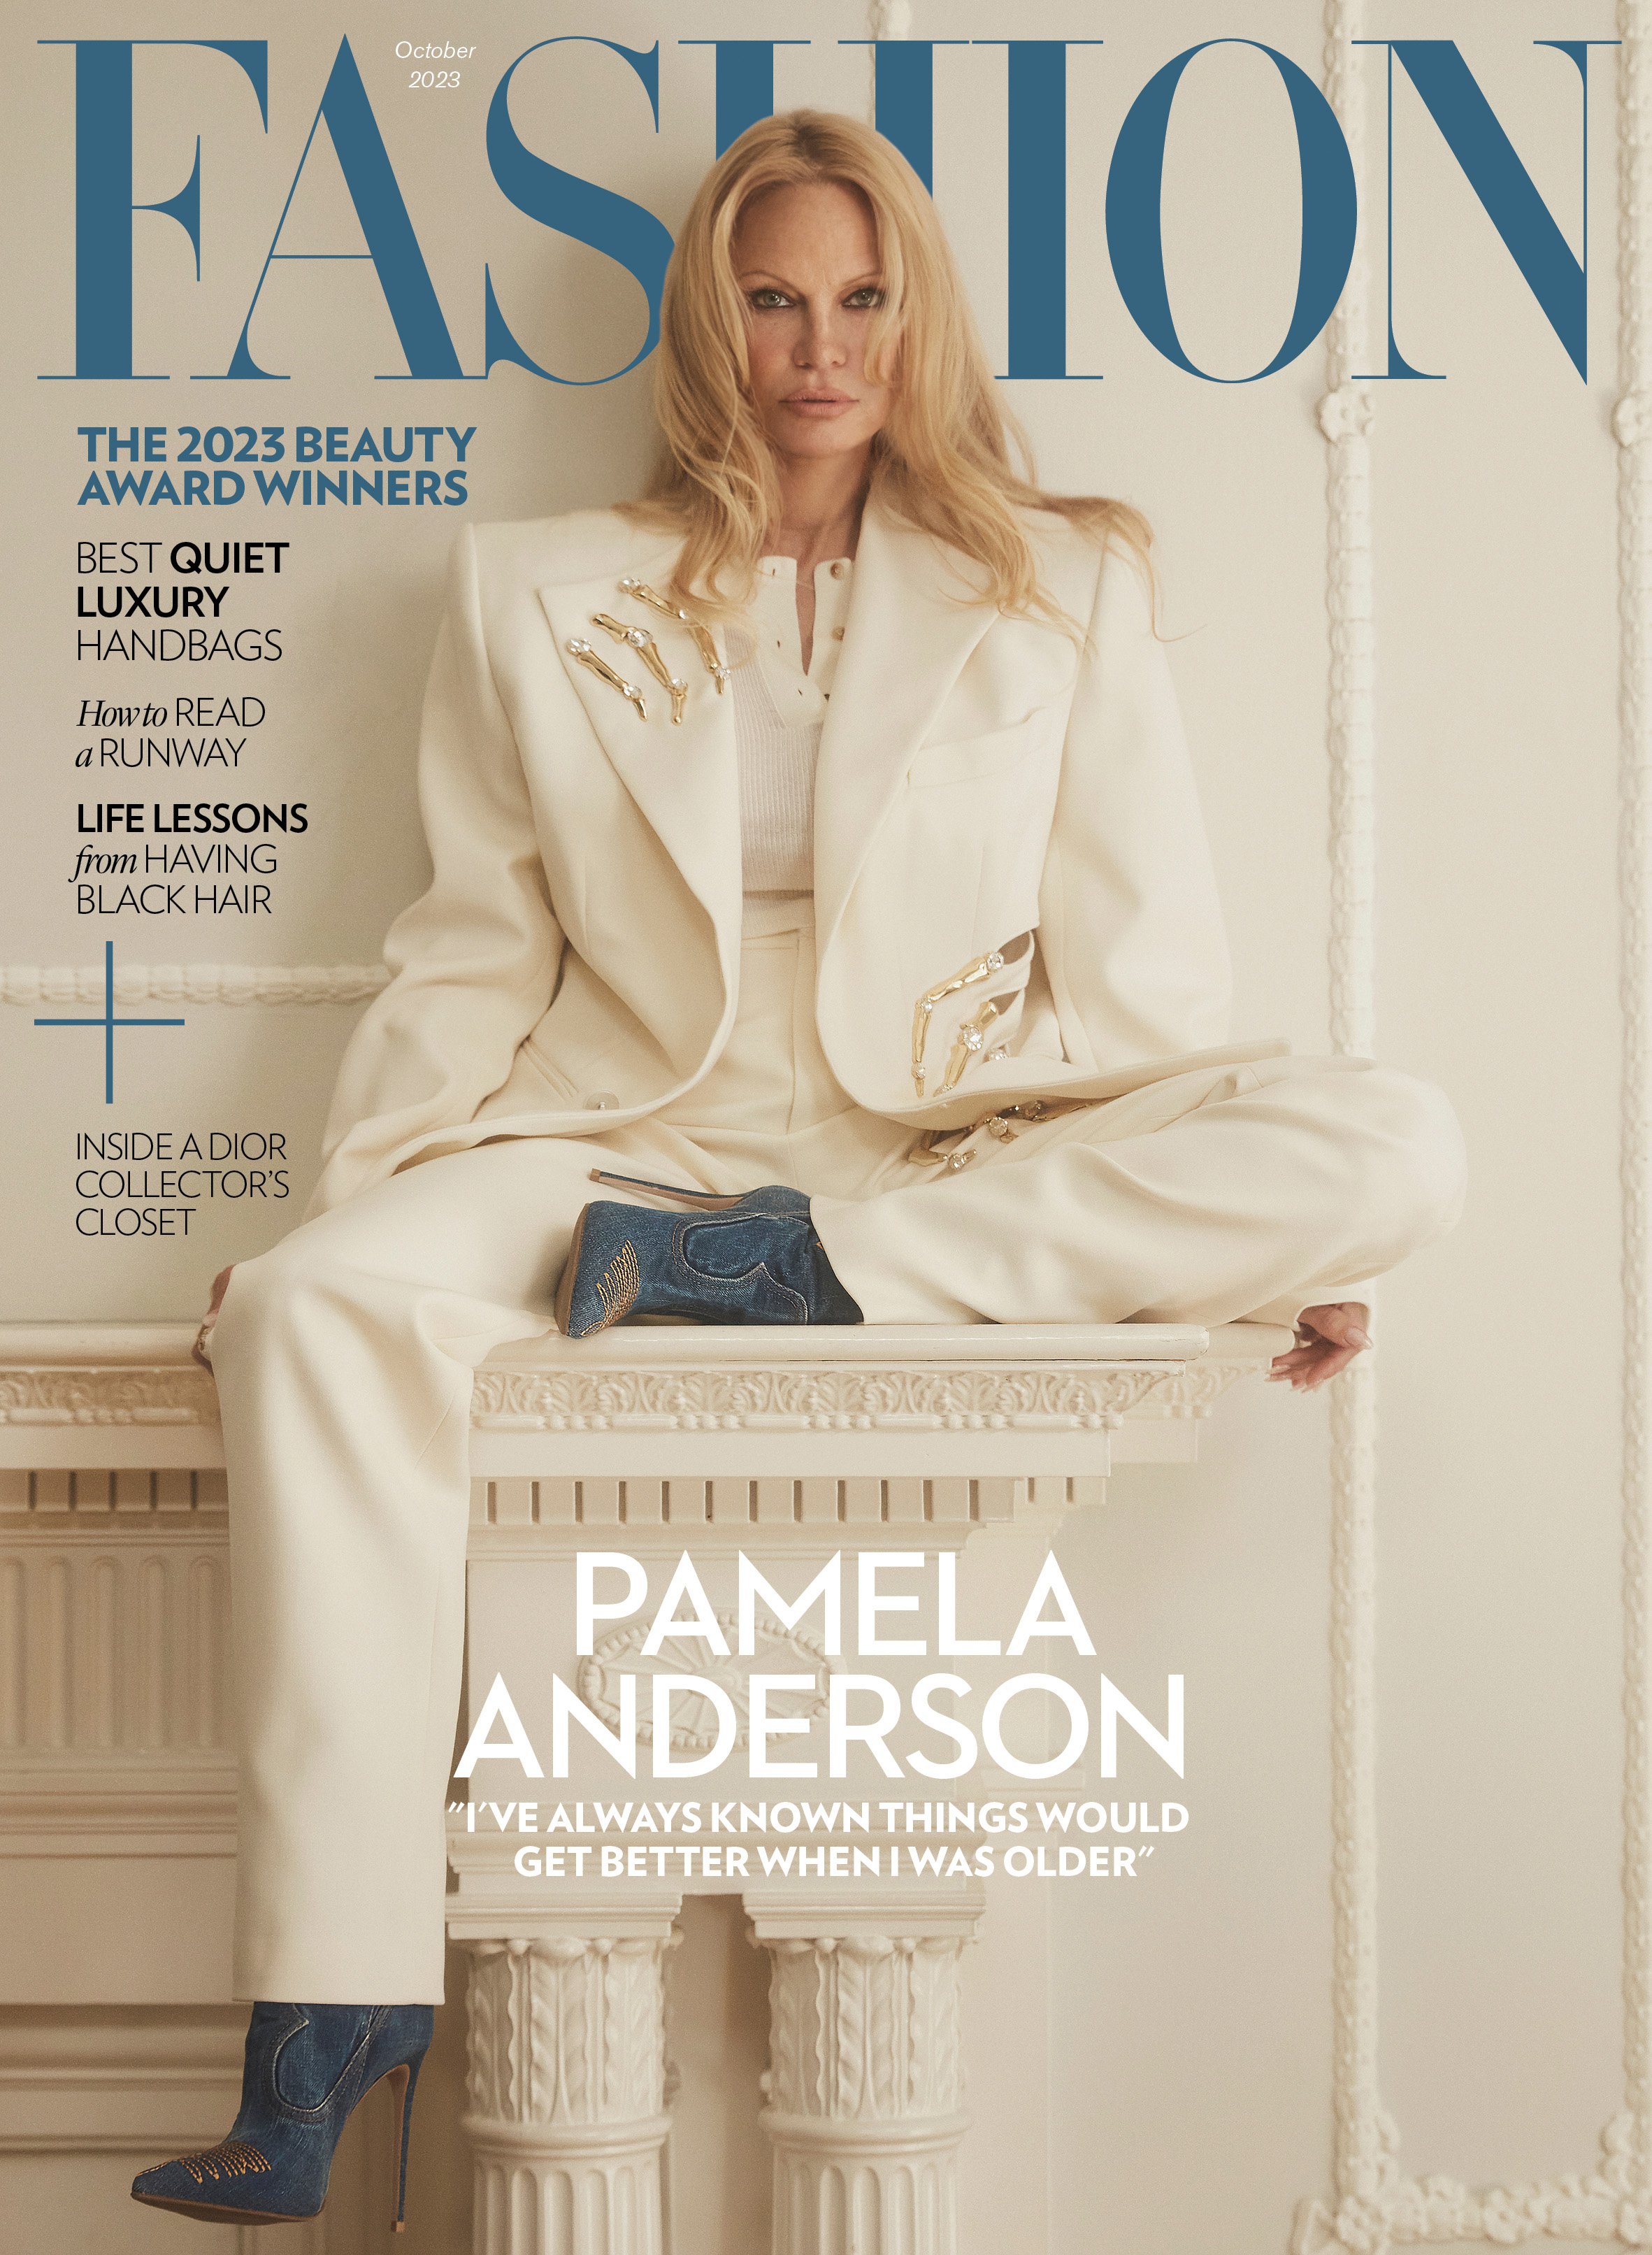 Fashion Magazine subscription image.